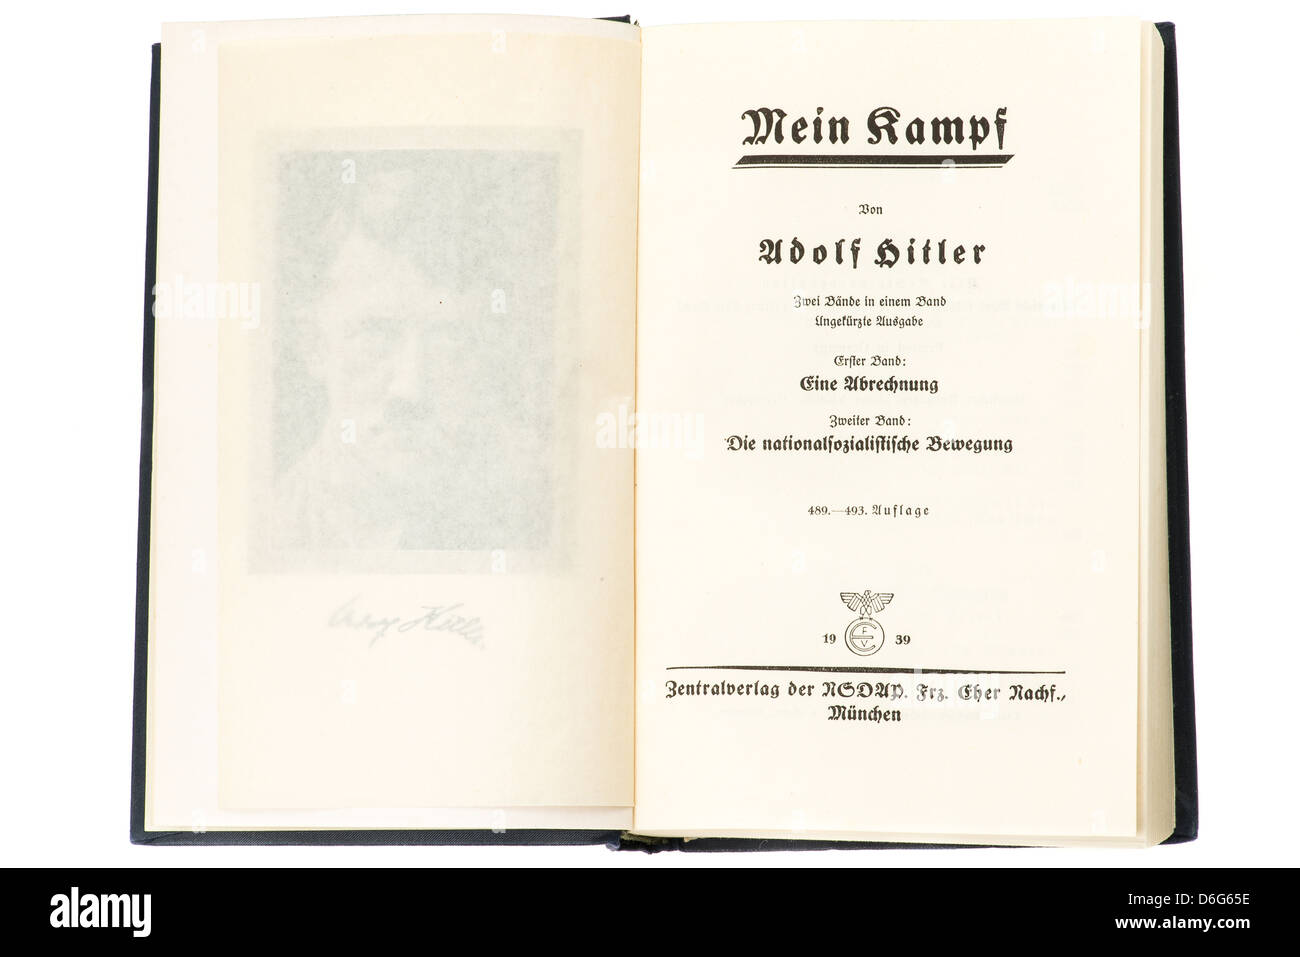 Les pages intérieures du livre Mein Kampf d'Adolf Hitler, c'est l'édition 1939. Studio photo avec un fond blanc. Banque D'Images